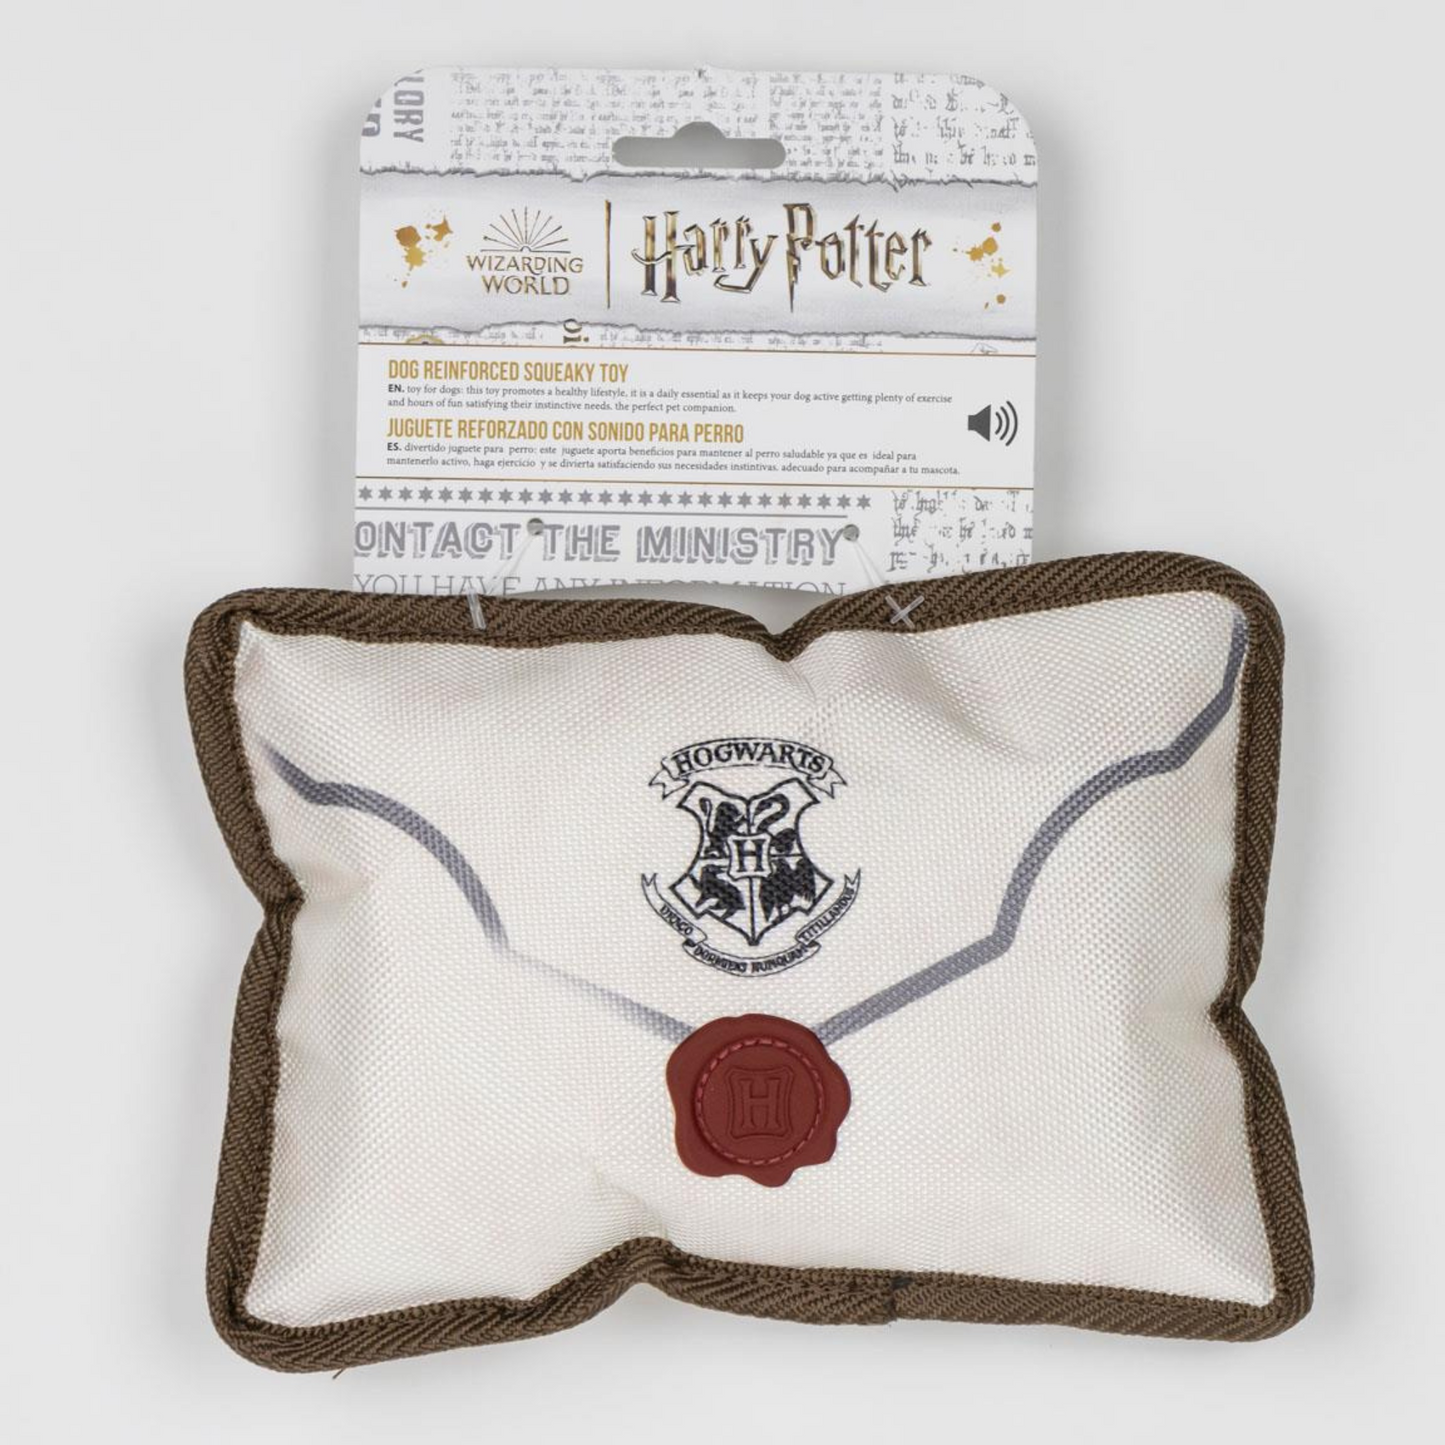 Harry Potter Dog Toy, Hogwarts Letter